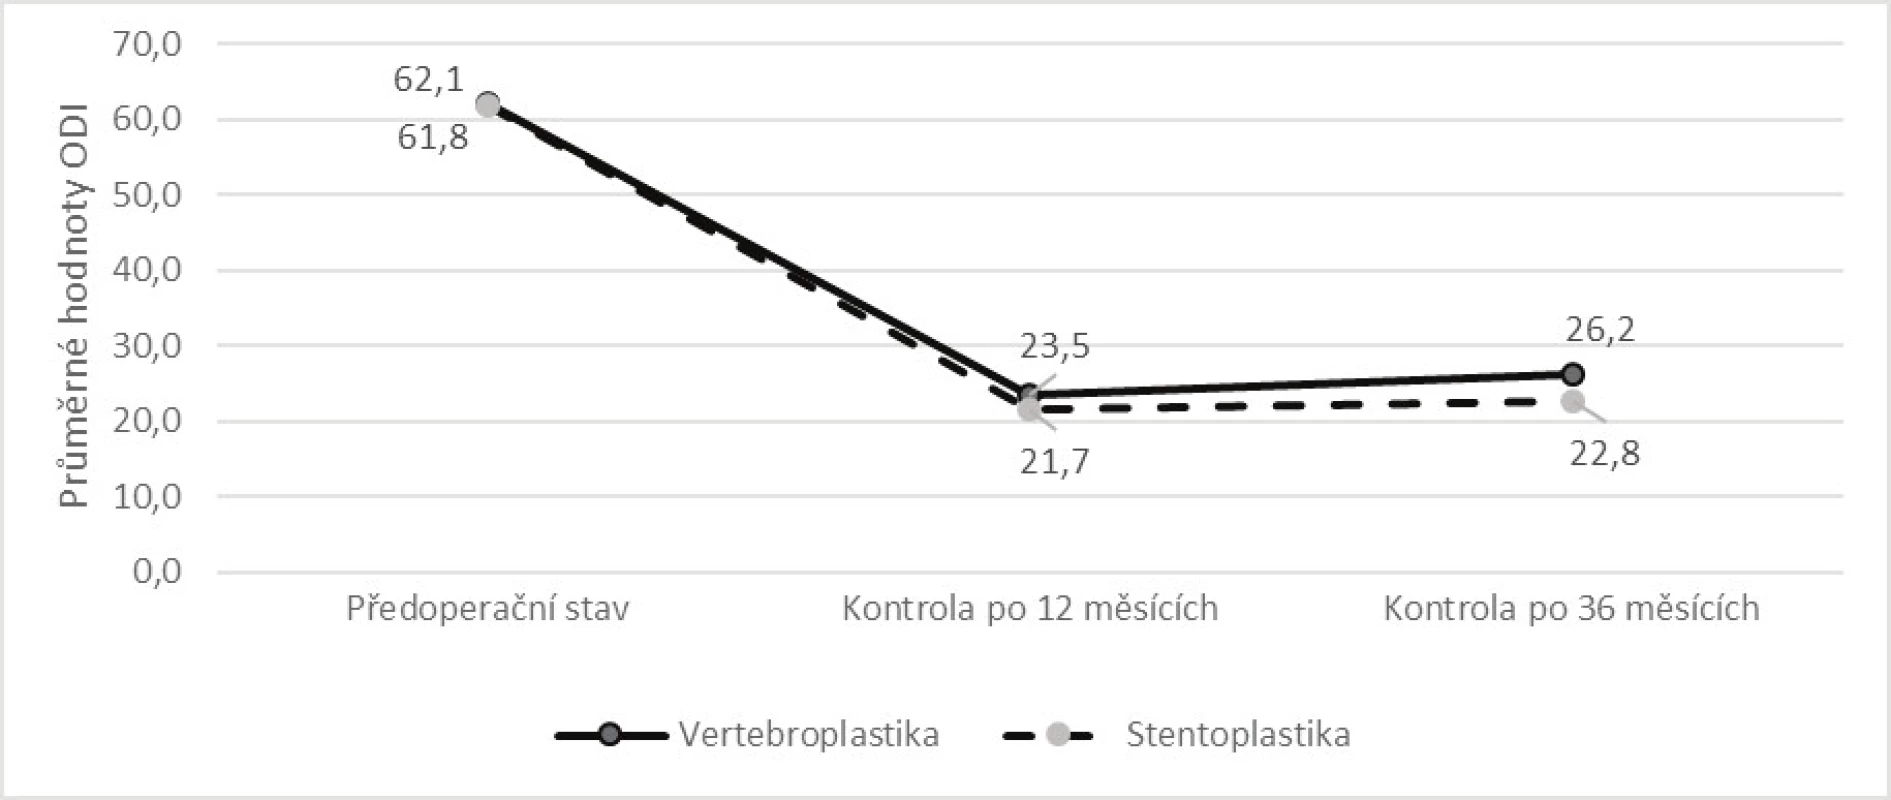 Srovnání vývoje průměrné hodnoty ODI v období od operace do kontroly po 
36 měsících dle způsobu léčby